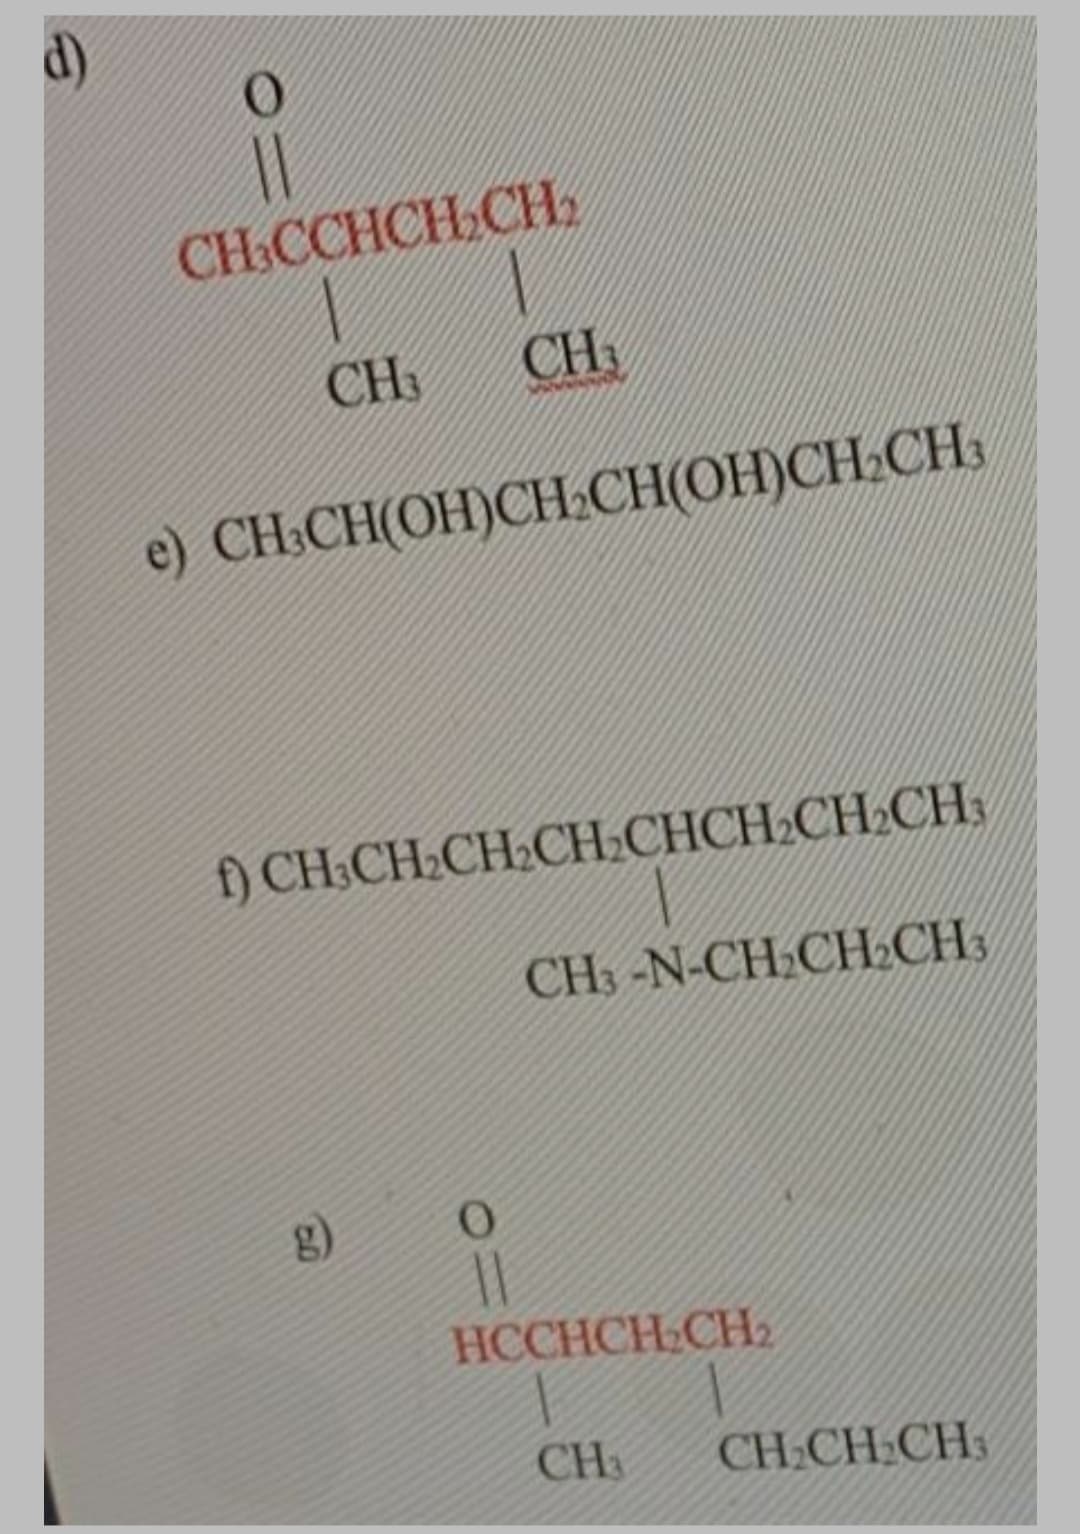 d)
CH.CCHCH CH
CH
CH
e) CH:CH(OH)CH2CH(OH)CH.CH:
) CH.CH.CH.CHСНCH.CH.CH.
CH3-N-CH.CHLCH3
g)
HCCHCH CH2
CH3
CH.CH:CH
